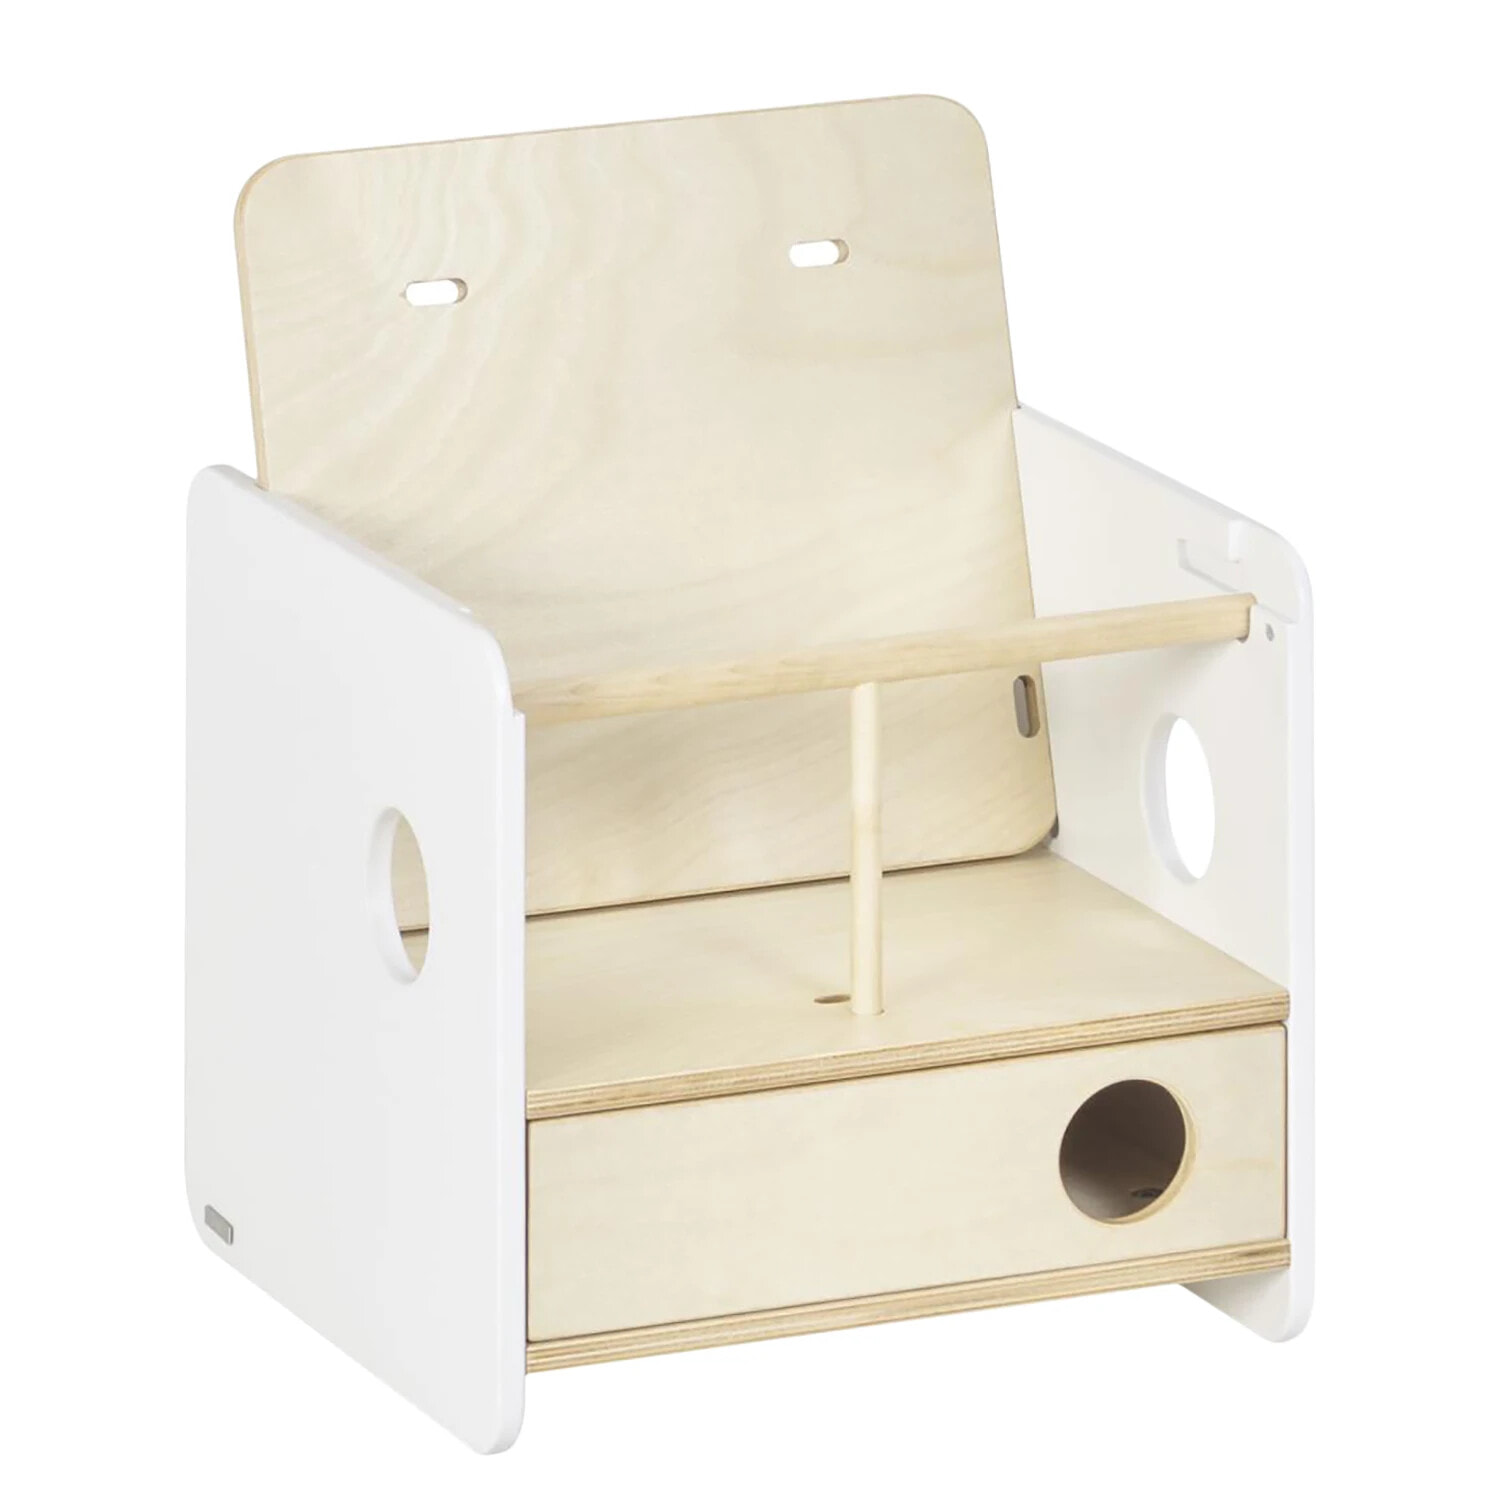 Der Evolutive Stuhl ist lackiert. Die Farbe dieses Produkts ist Holz Naturfarbe.